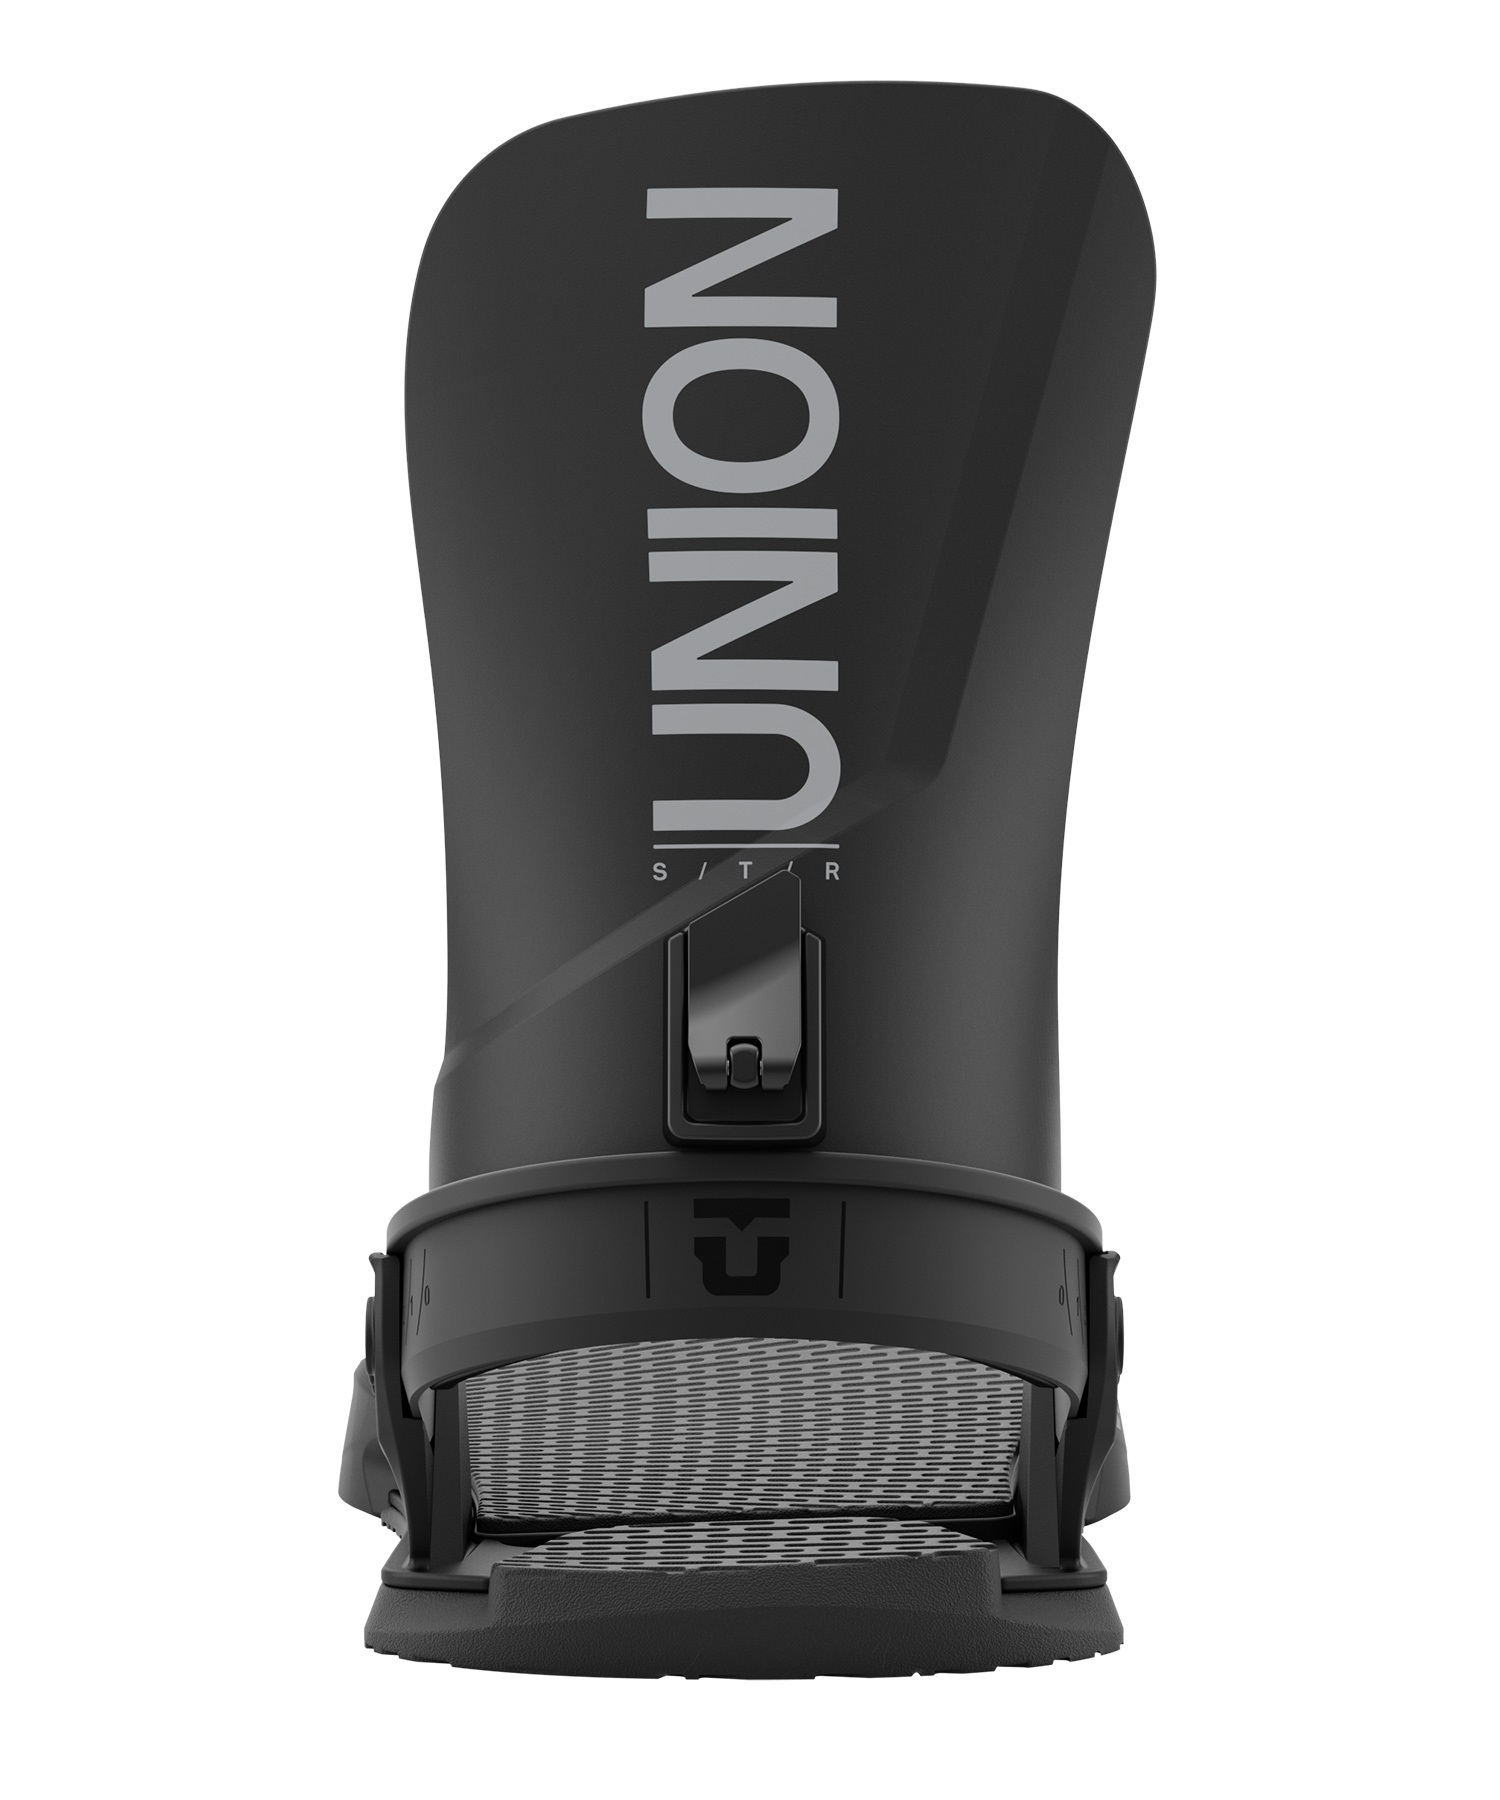 【早期購入】UNION ユニオン スノーボード バインディング ビンディング メンズ STR ムラサキスポーツ 24-25モデル LL A19(MUS-S)